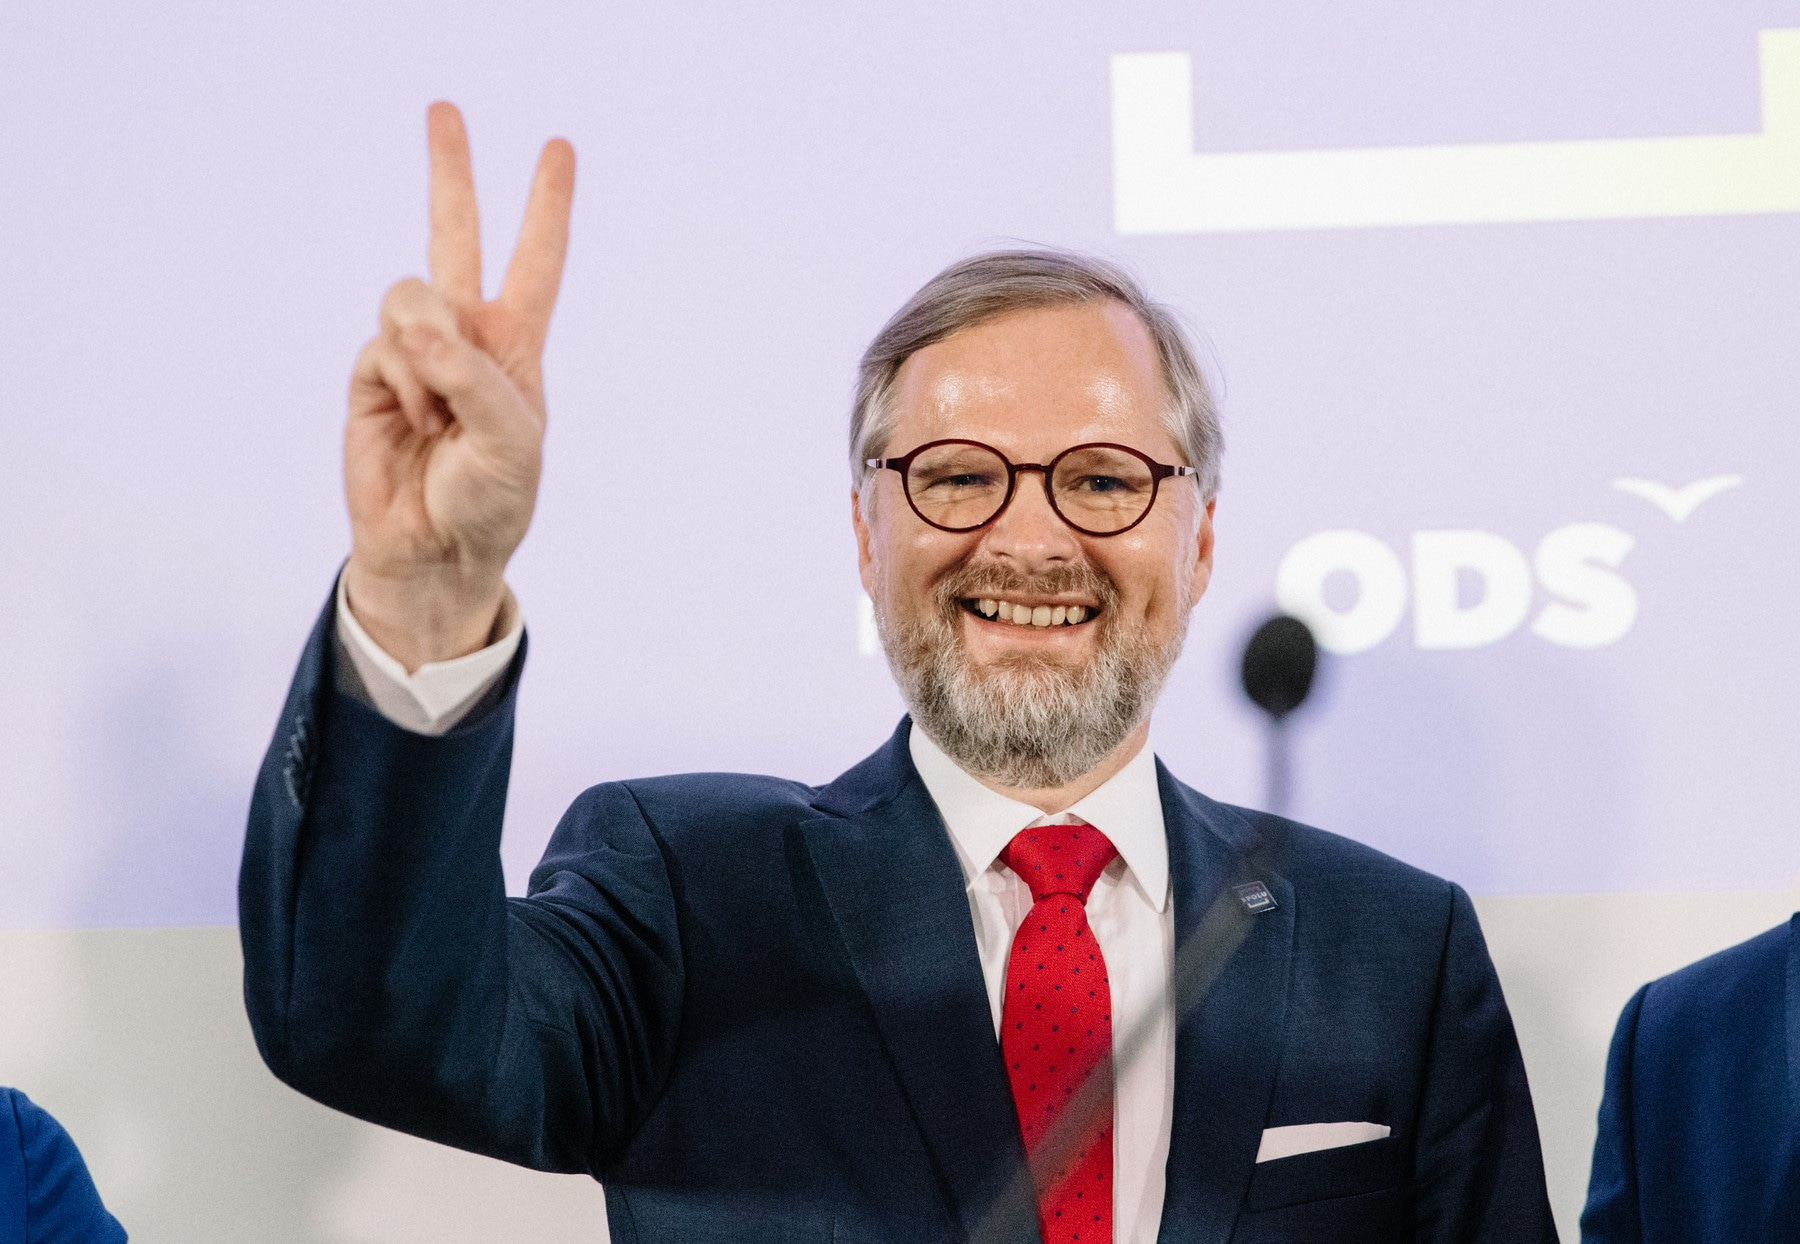 Kandidát na premiéra a předseda ODS Petr Fiala po vítězství koalice Spolu ve volbách 2021.